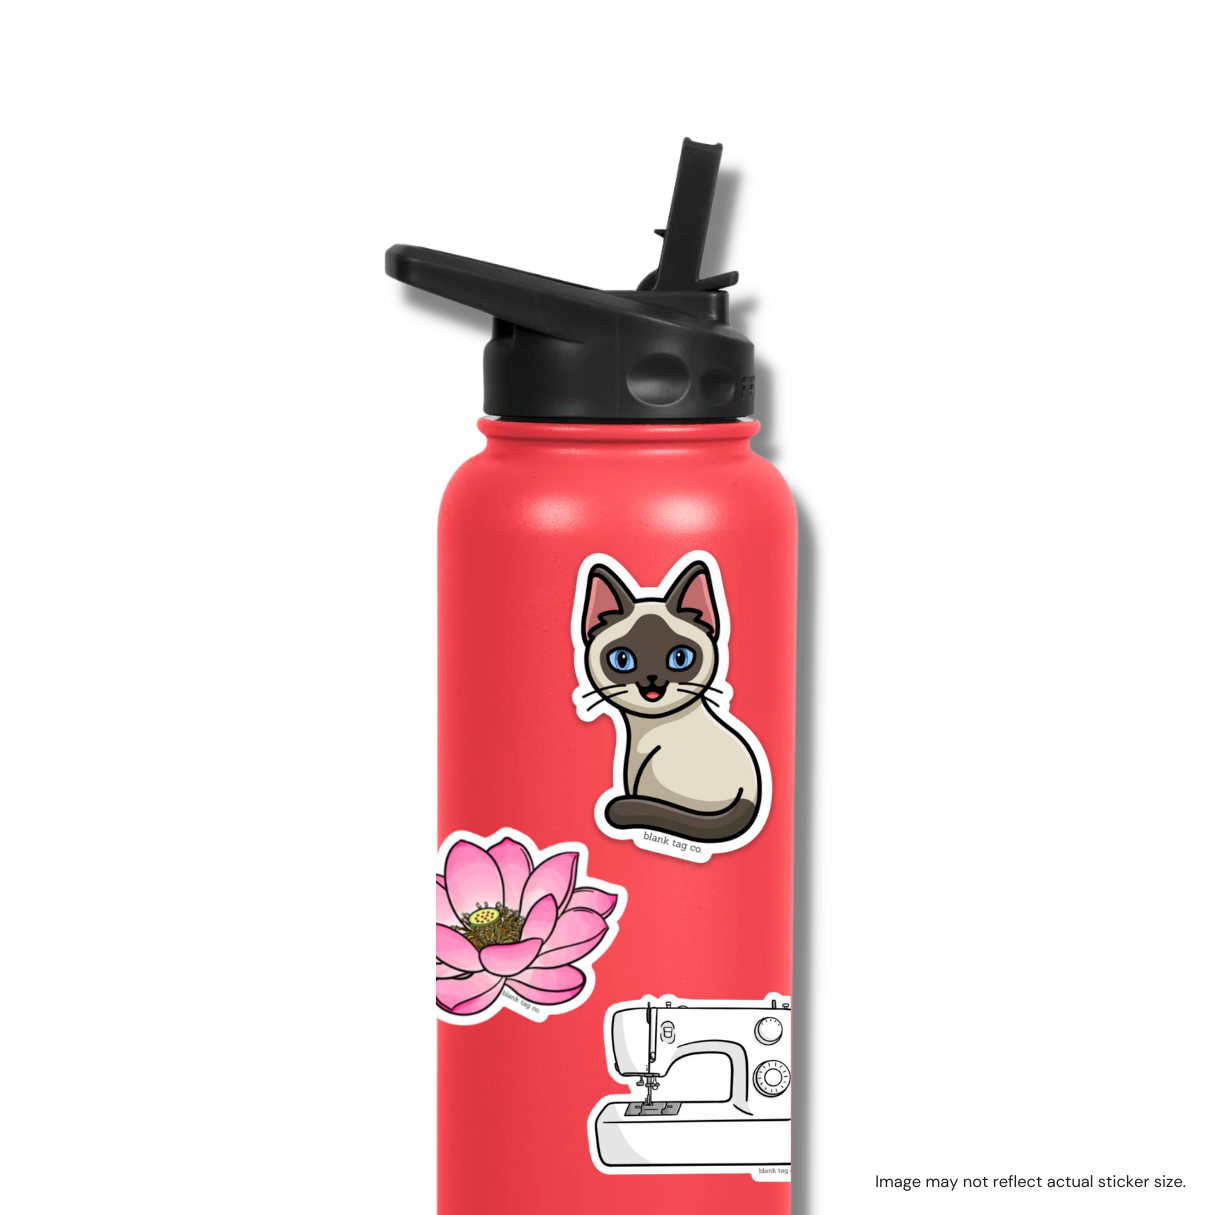 The Siamese Cat Sticker